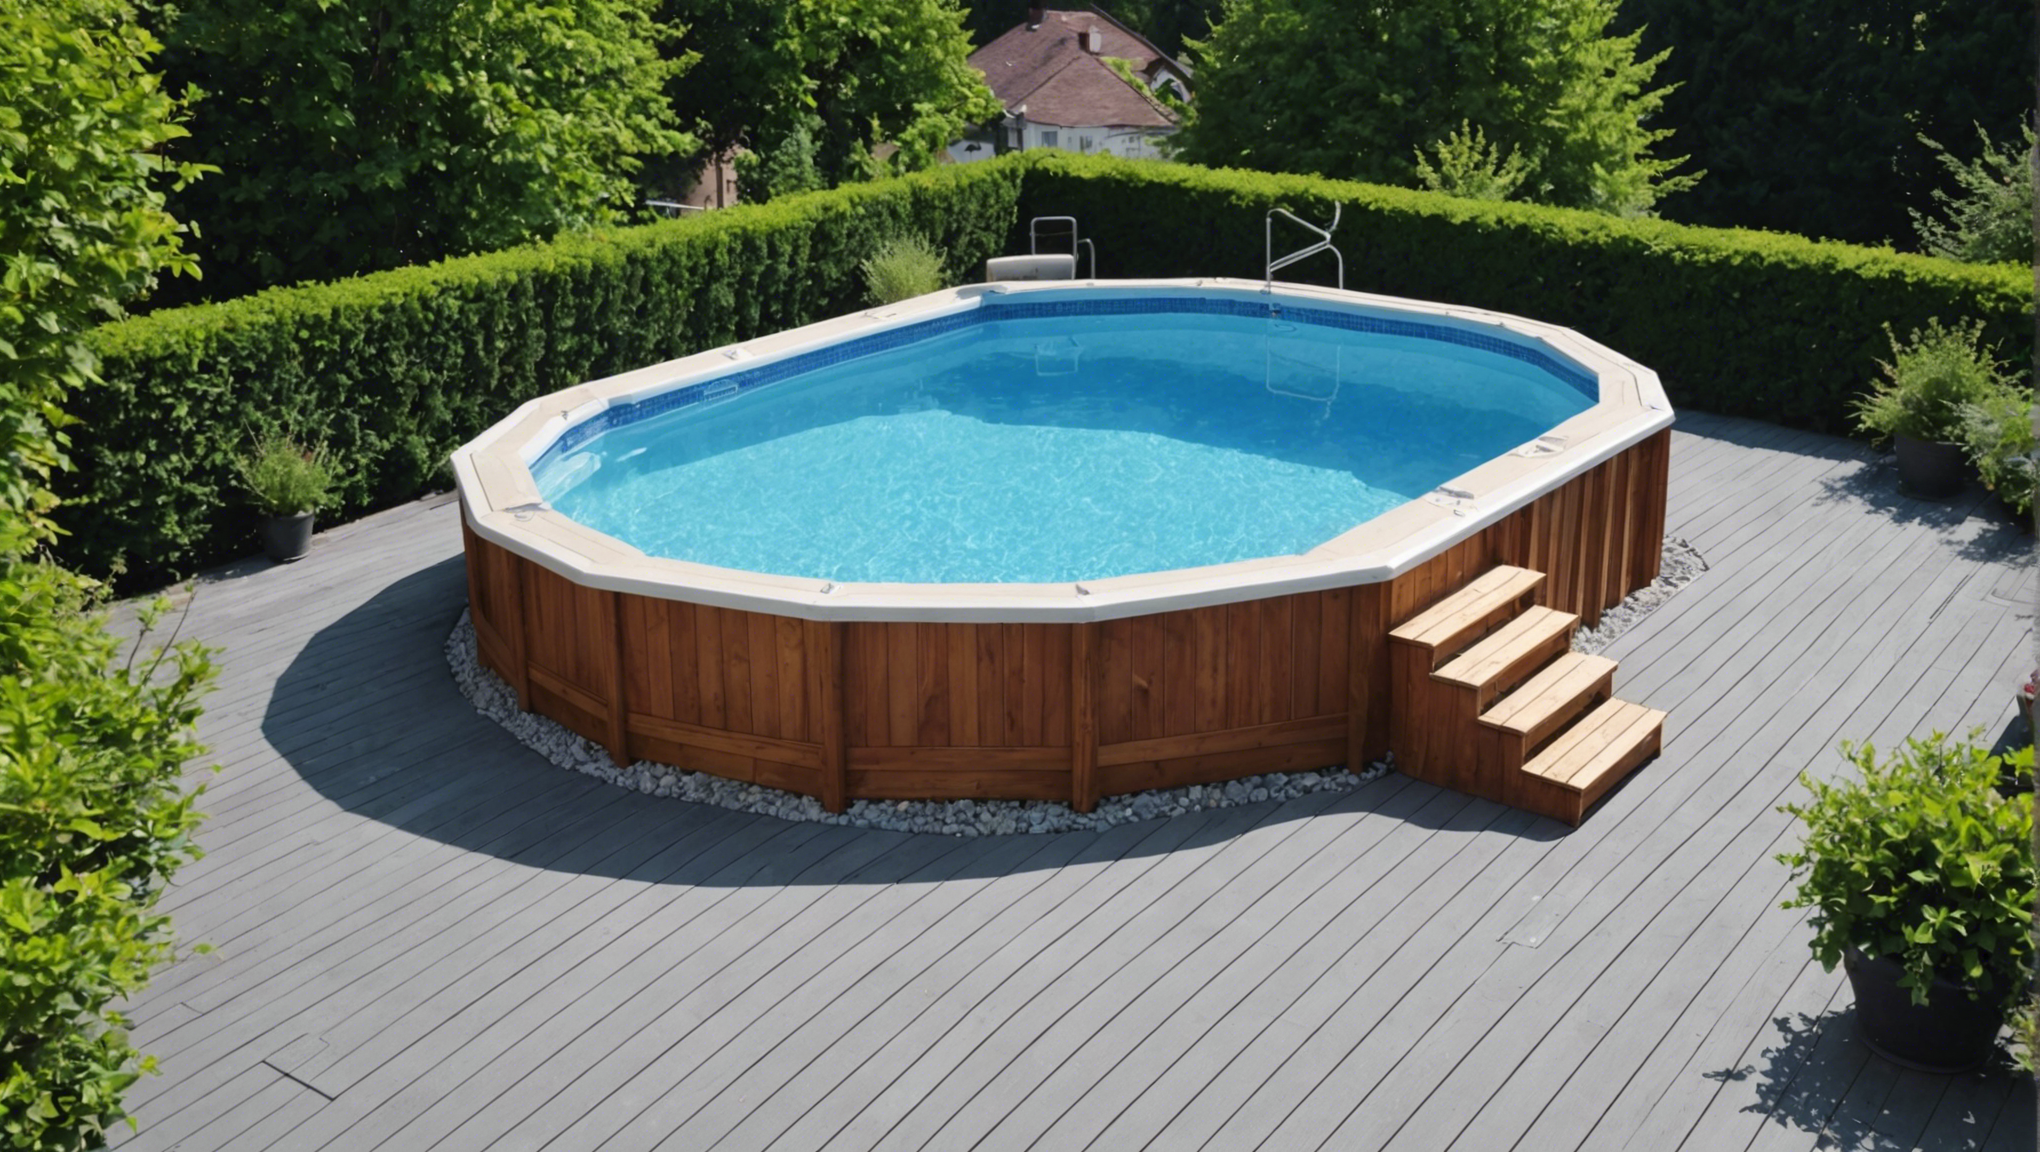 découvrez nos conseils pour choisir les meilleurs matériaux de terrassement pour une piscine coque. profitez d'une expertise en aménagement extérieur pour un projet de terrassement de piscine réussi.